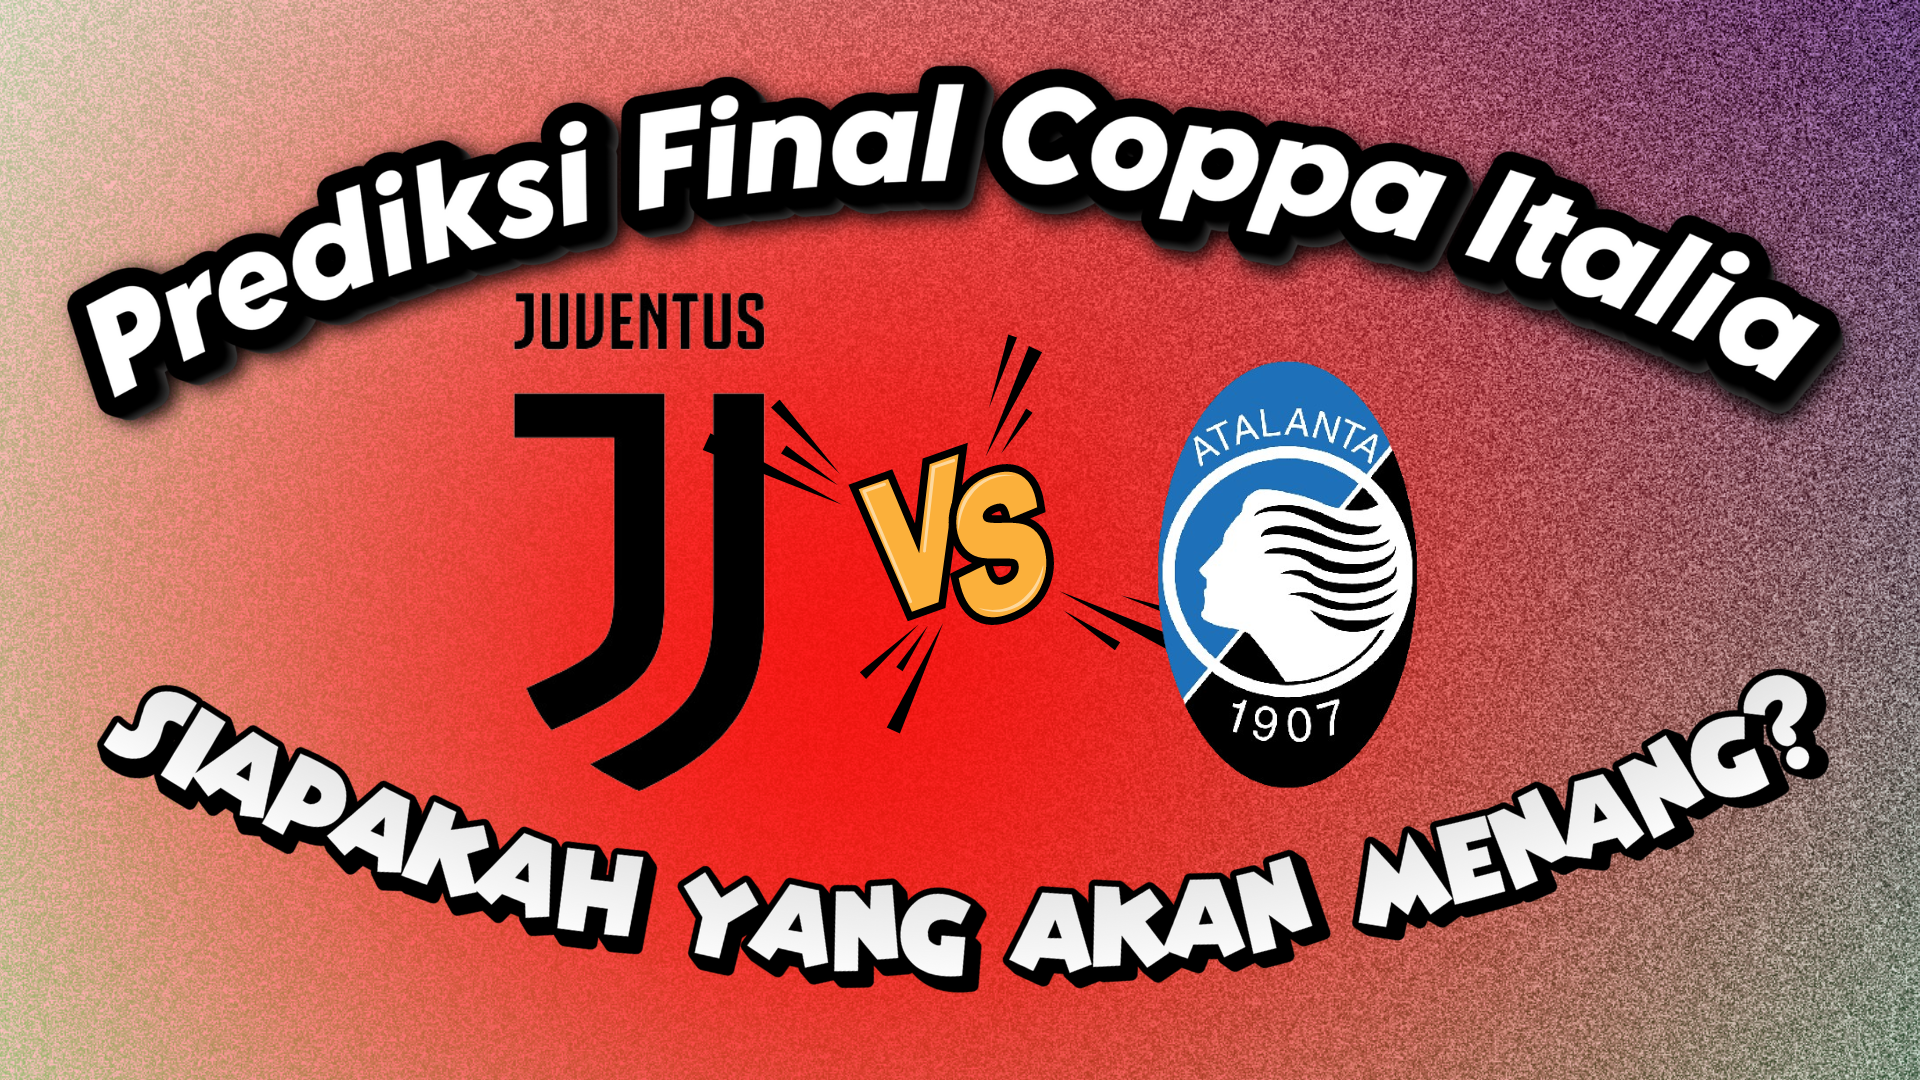 Prediksi Final Coppa Italia Juventus vs Atalanta